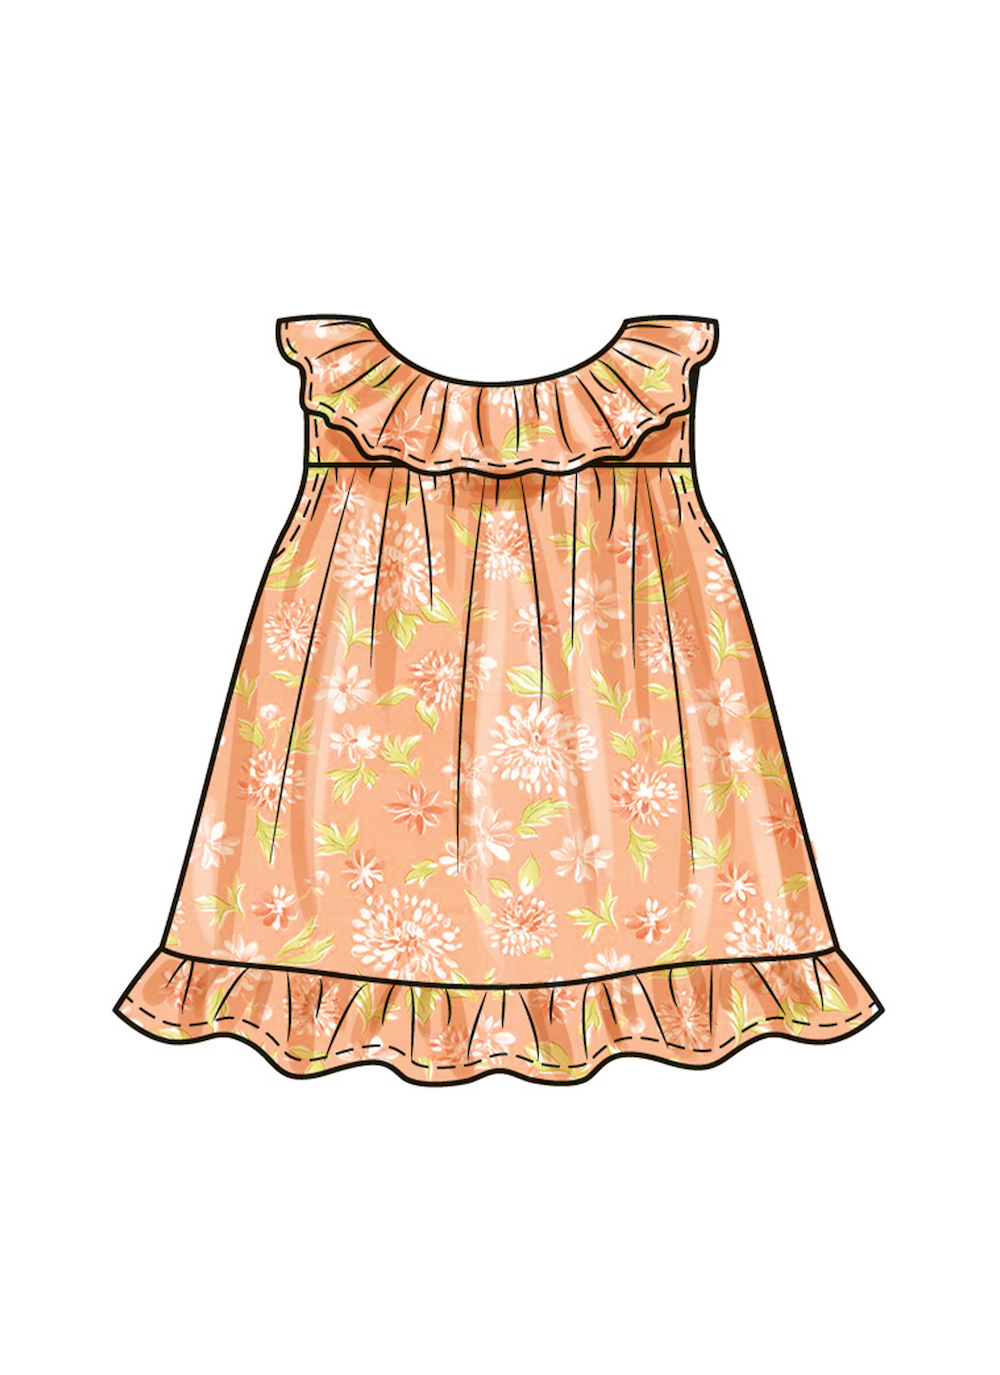 Butterick® Papierschnittmuster Baby Kleid Hut B6935, Größe A(XS-S-M-L)(0-18 Monate)